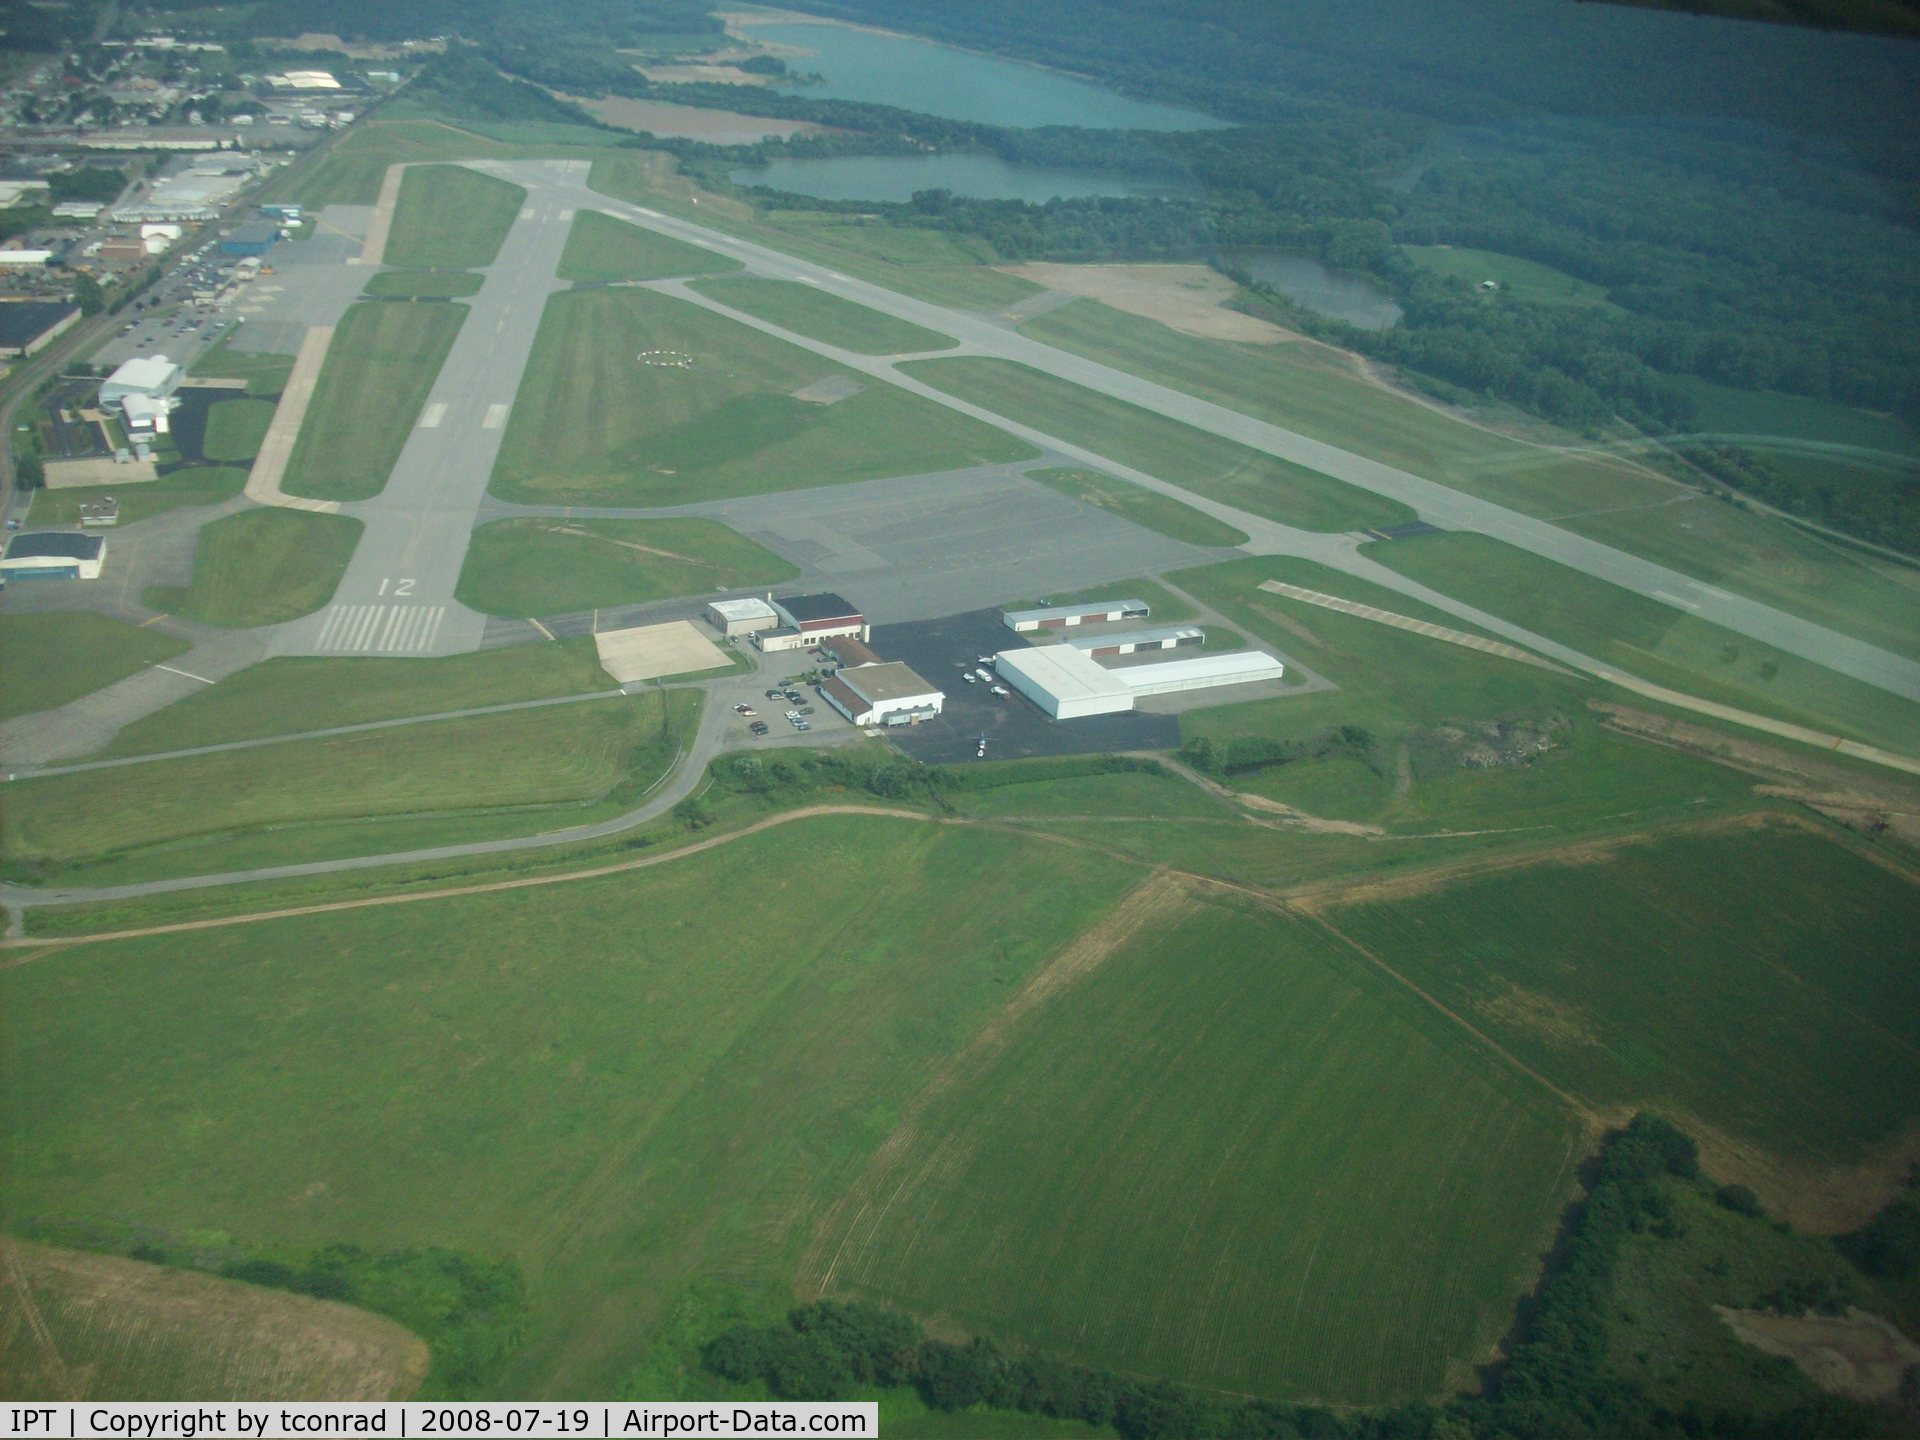 Williamsport Regional Airport (IPT) - leaving Williamsport